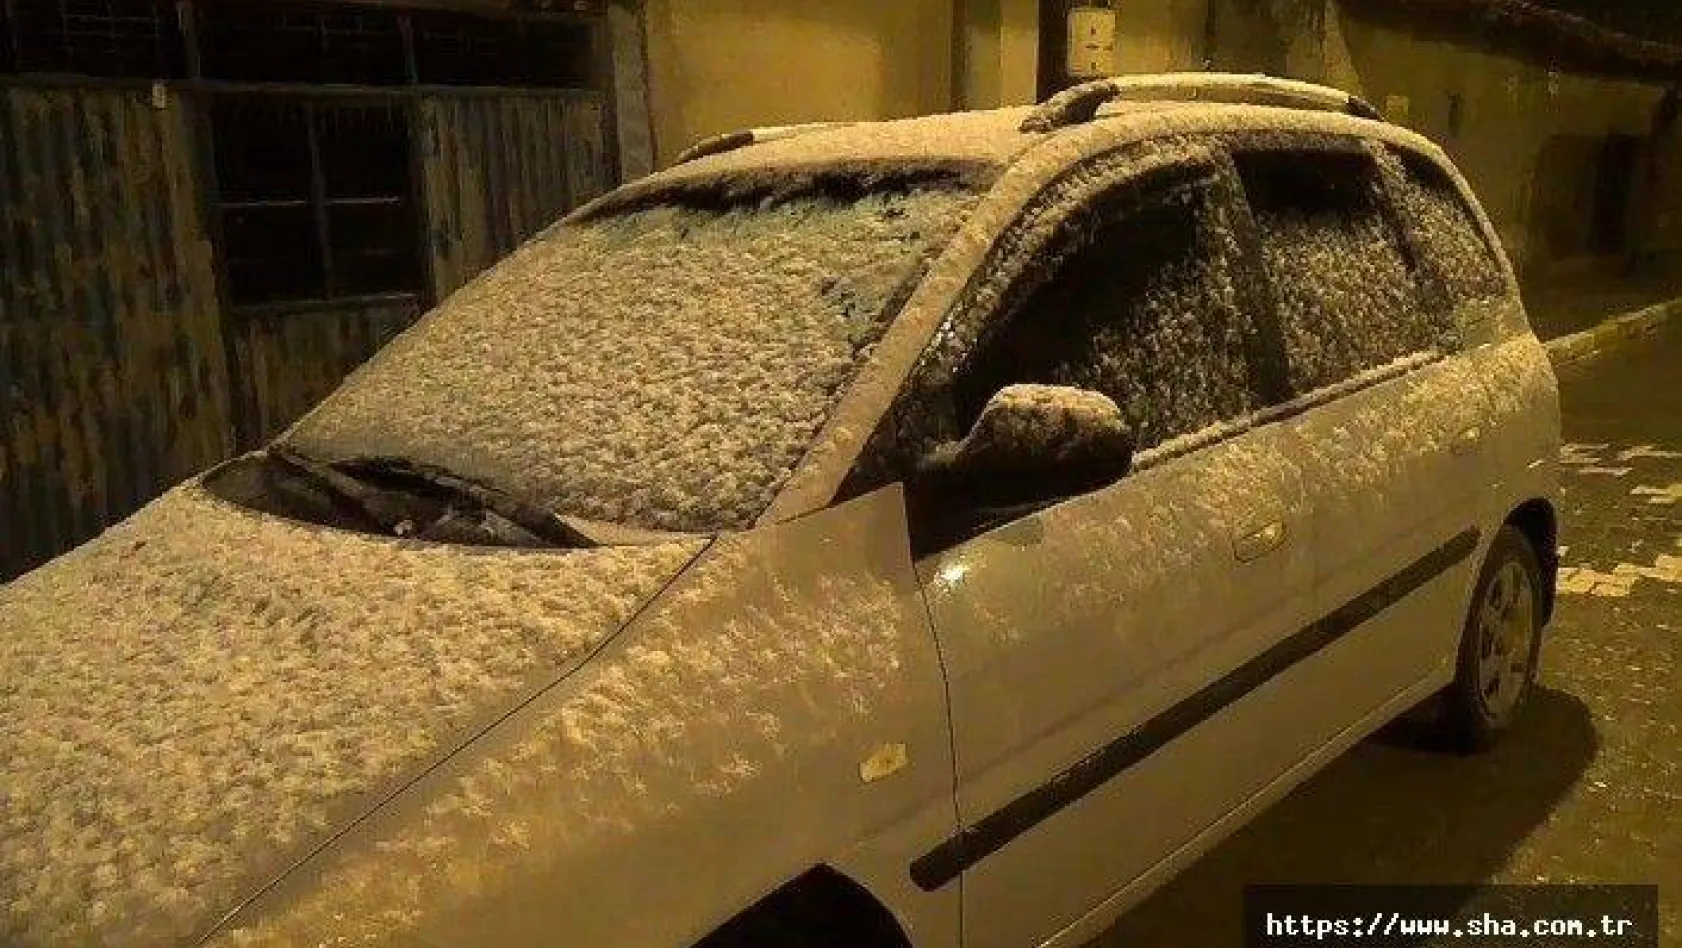 Silivri'de kar yağışı başladı